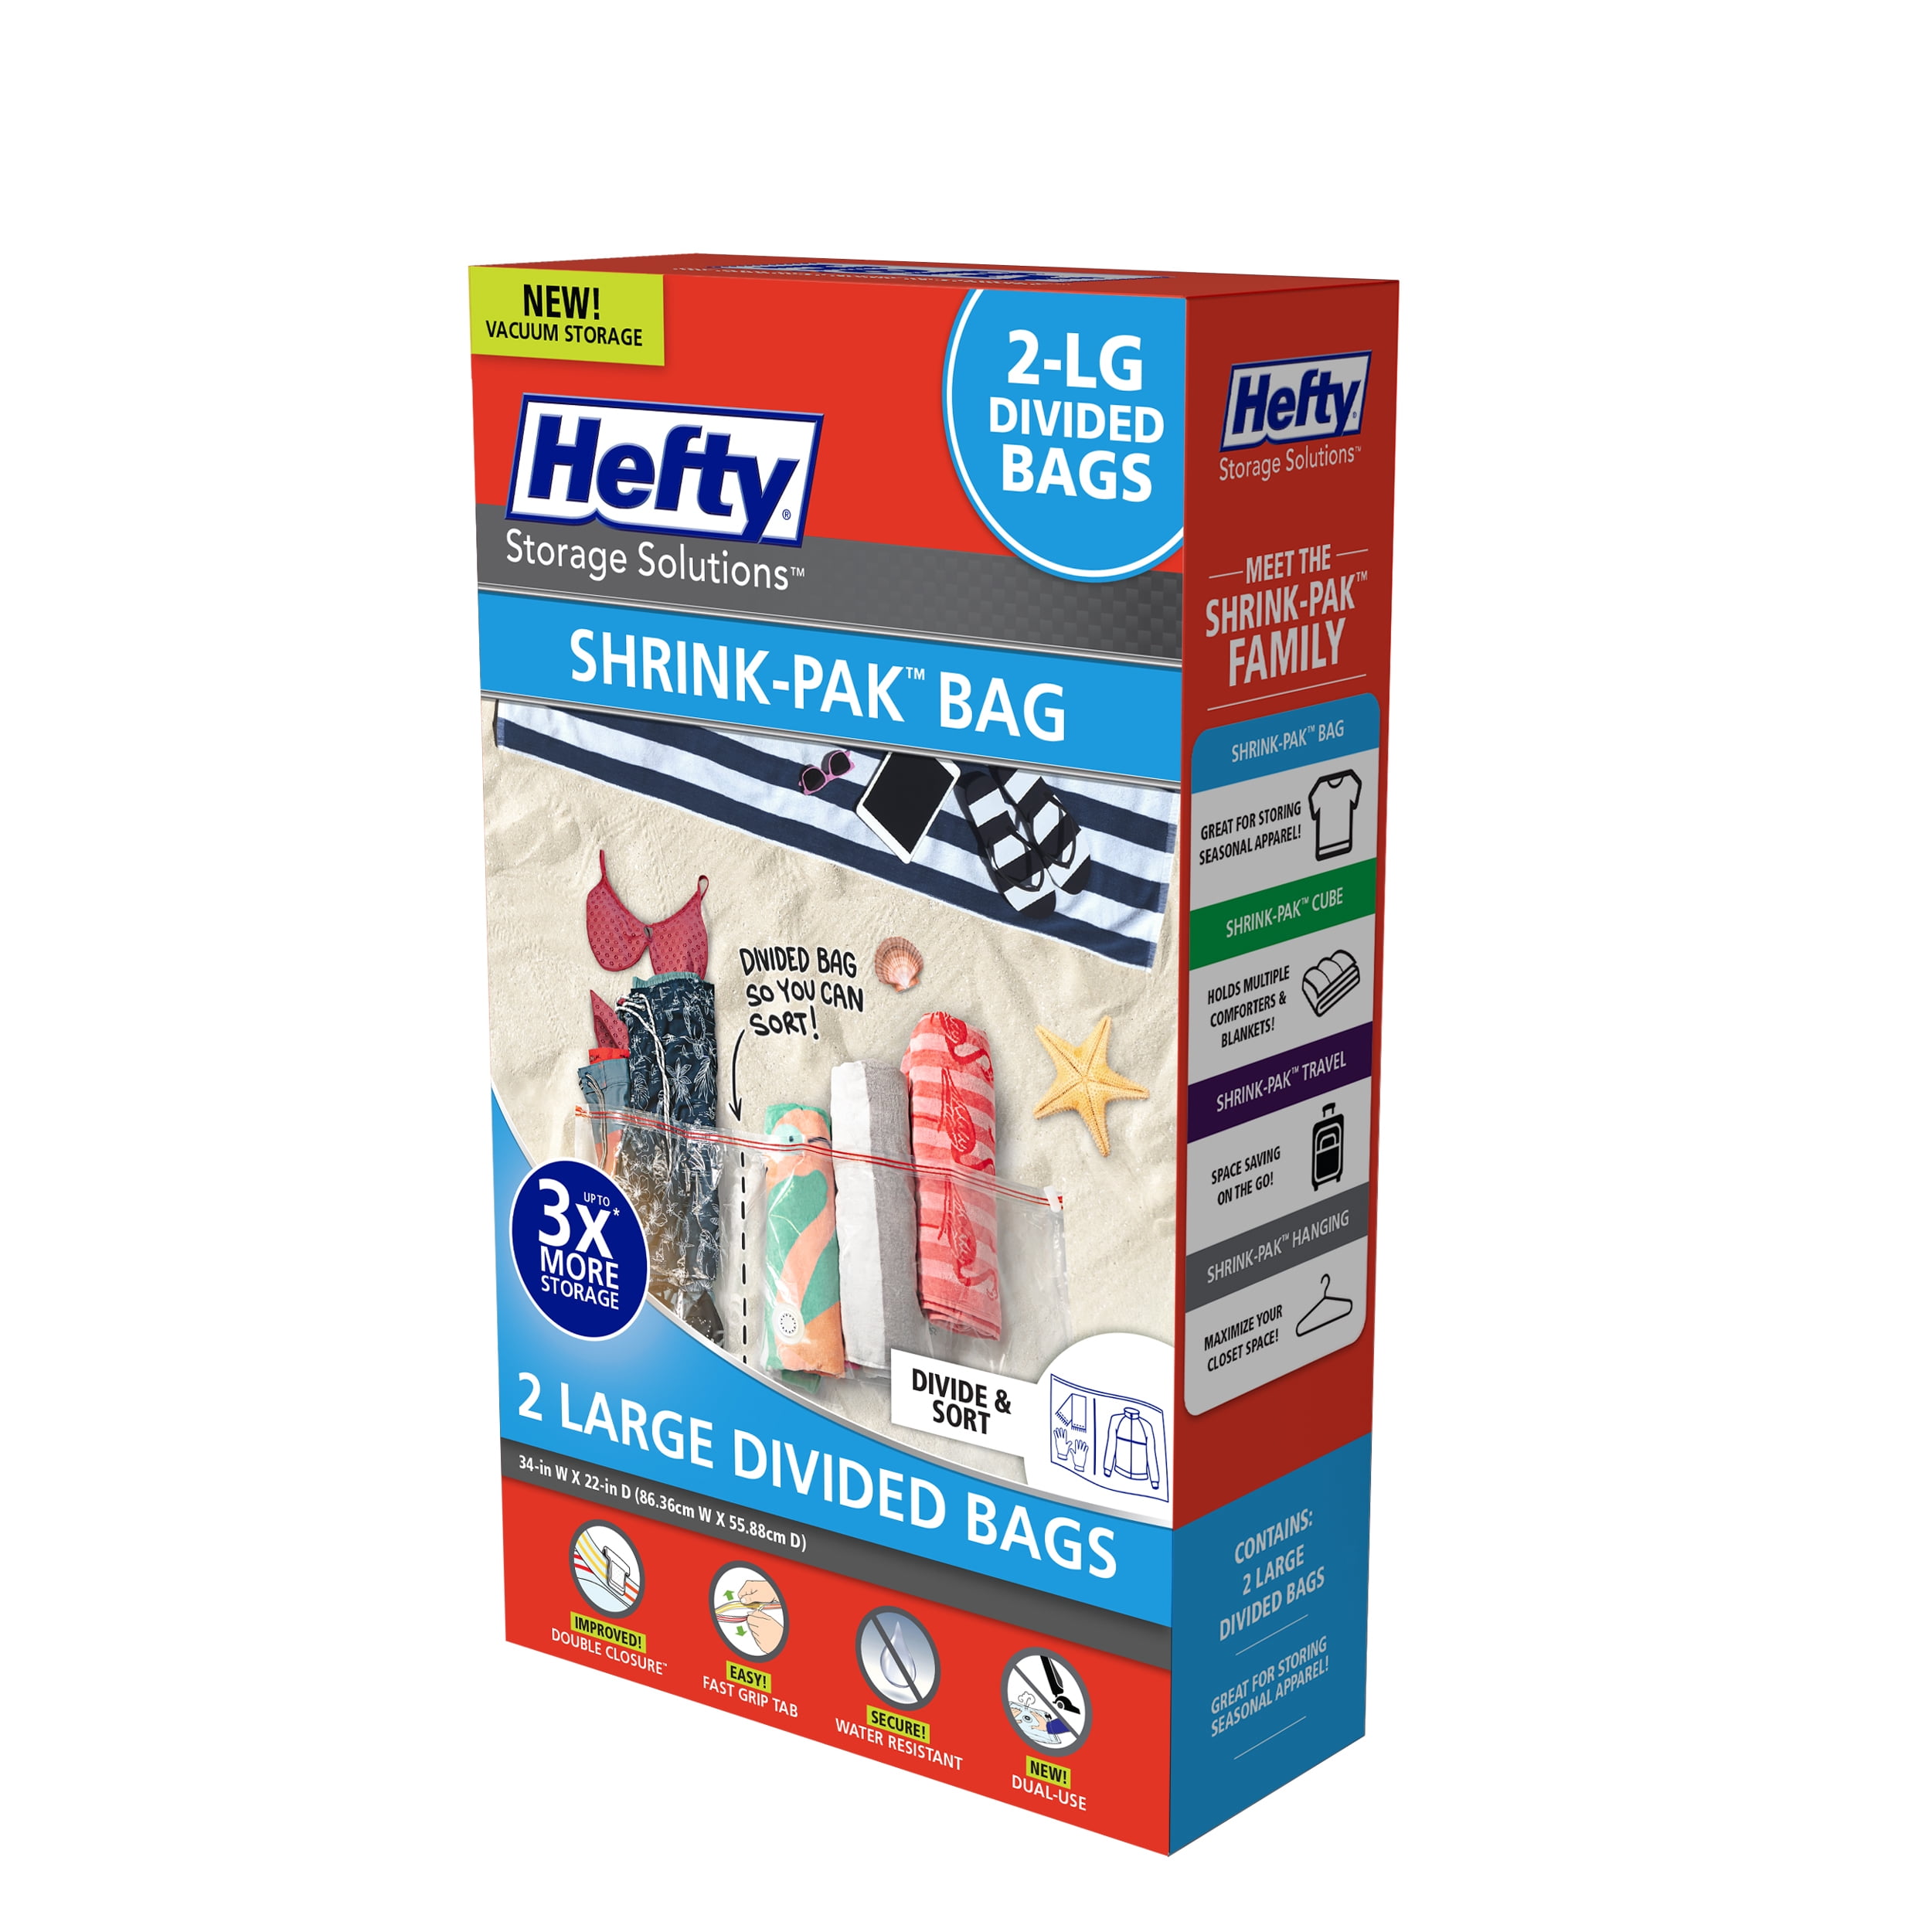 Hefty Storage Solutions Shrink-Pak Bag LARGE Divided Bags (2 pack)